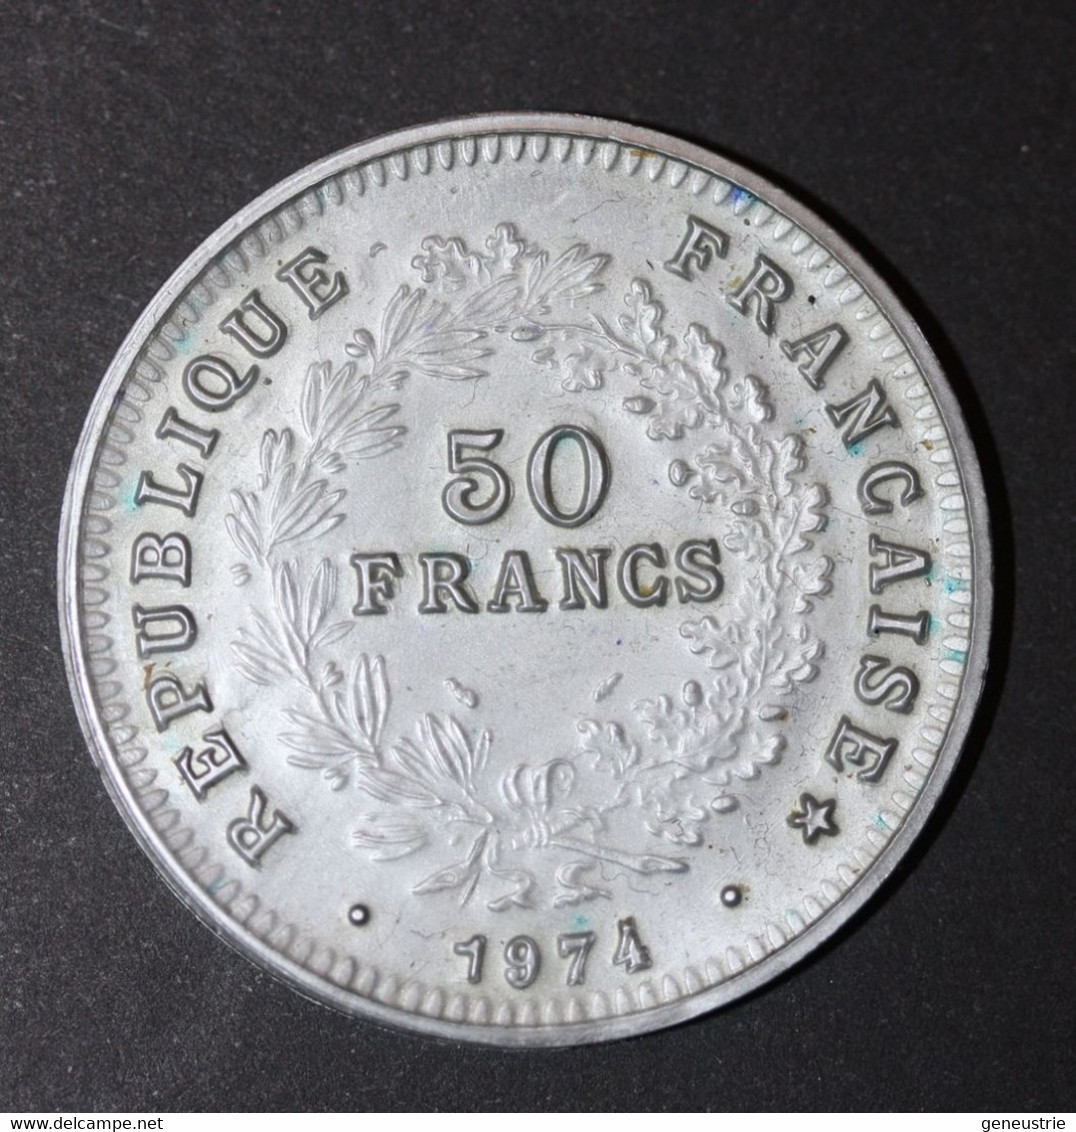 Pièce De 50 Francs Type Hercule 1974 - Jeton Plastique école En Francs Années 60 - Coins School Token - Profesionales / De Sociedad